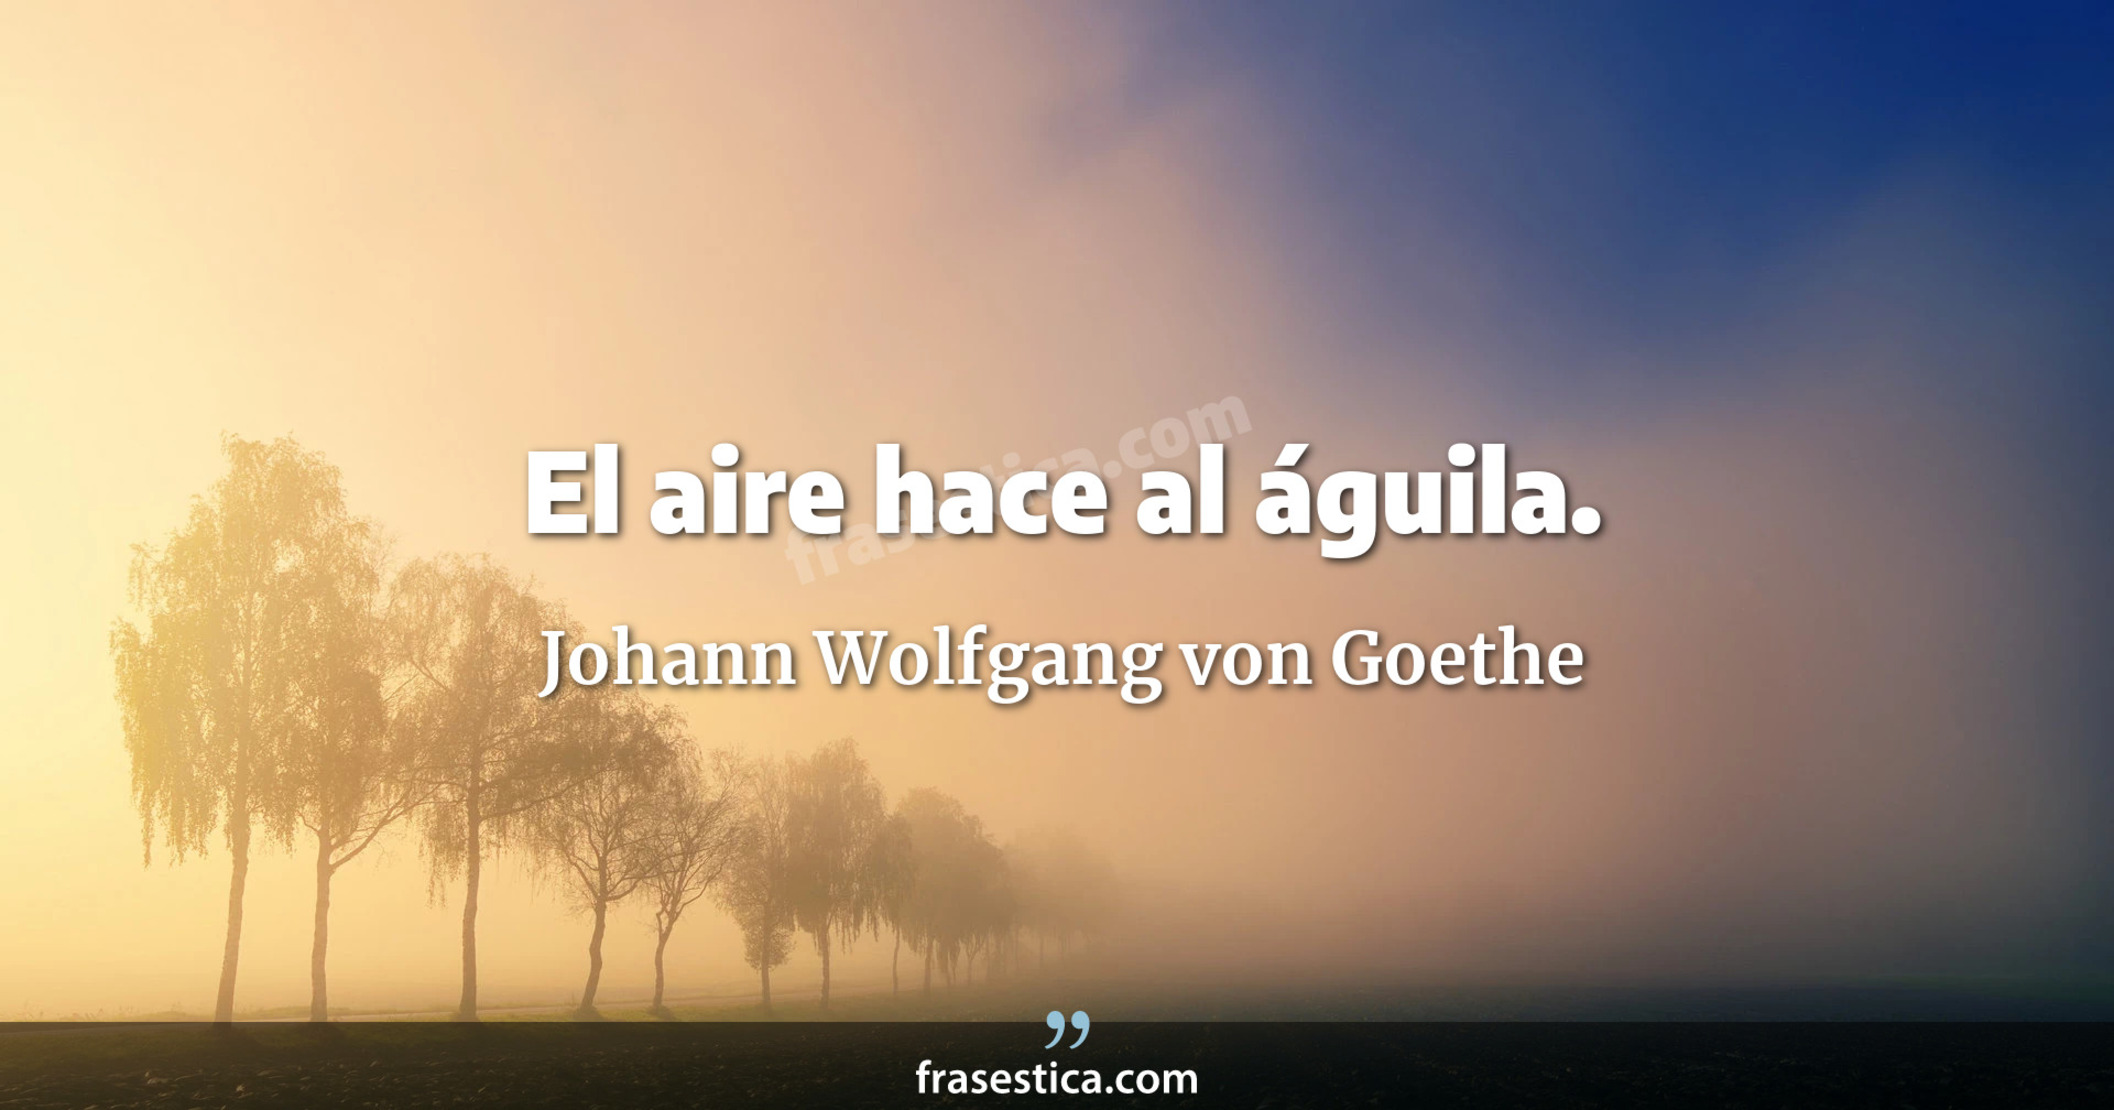 El aire hace al águila. - Johann Wolfgang von Goethe